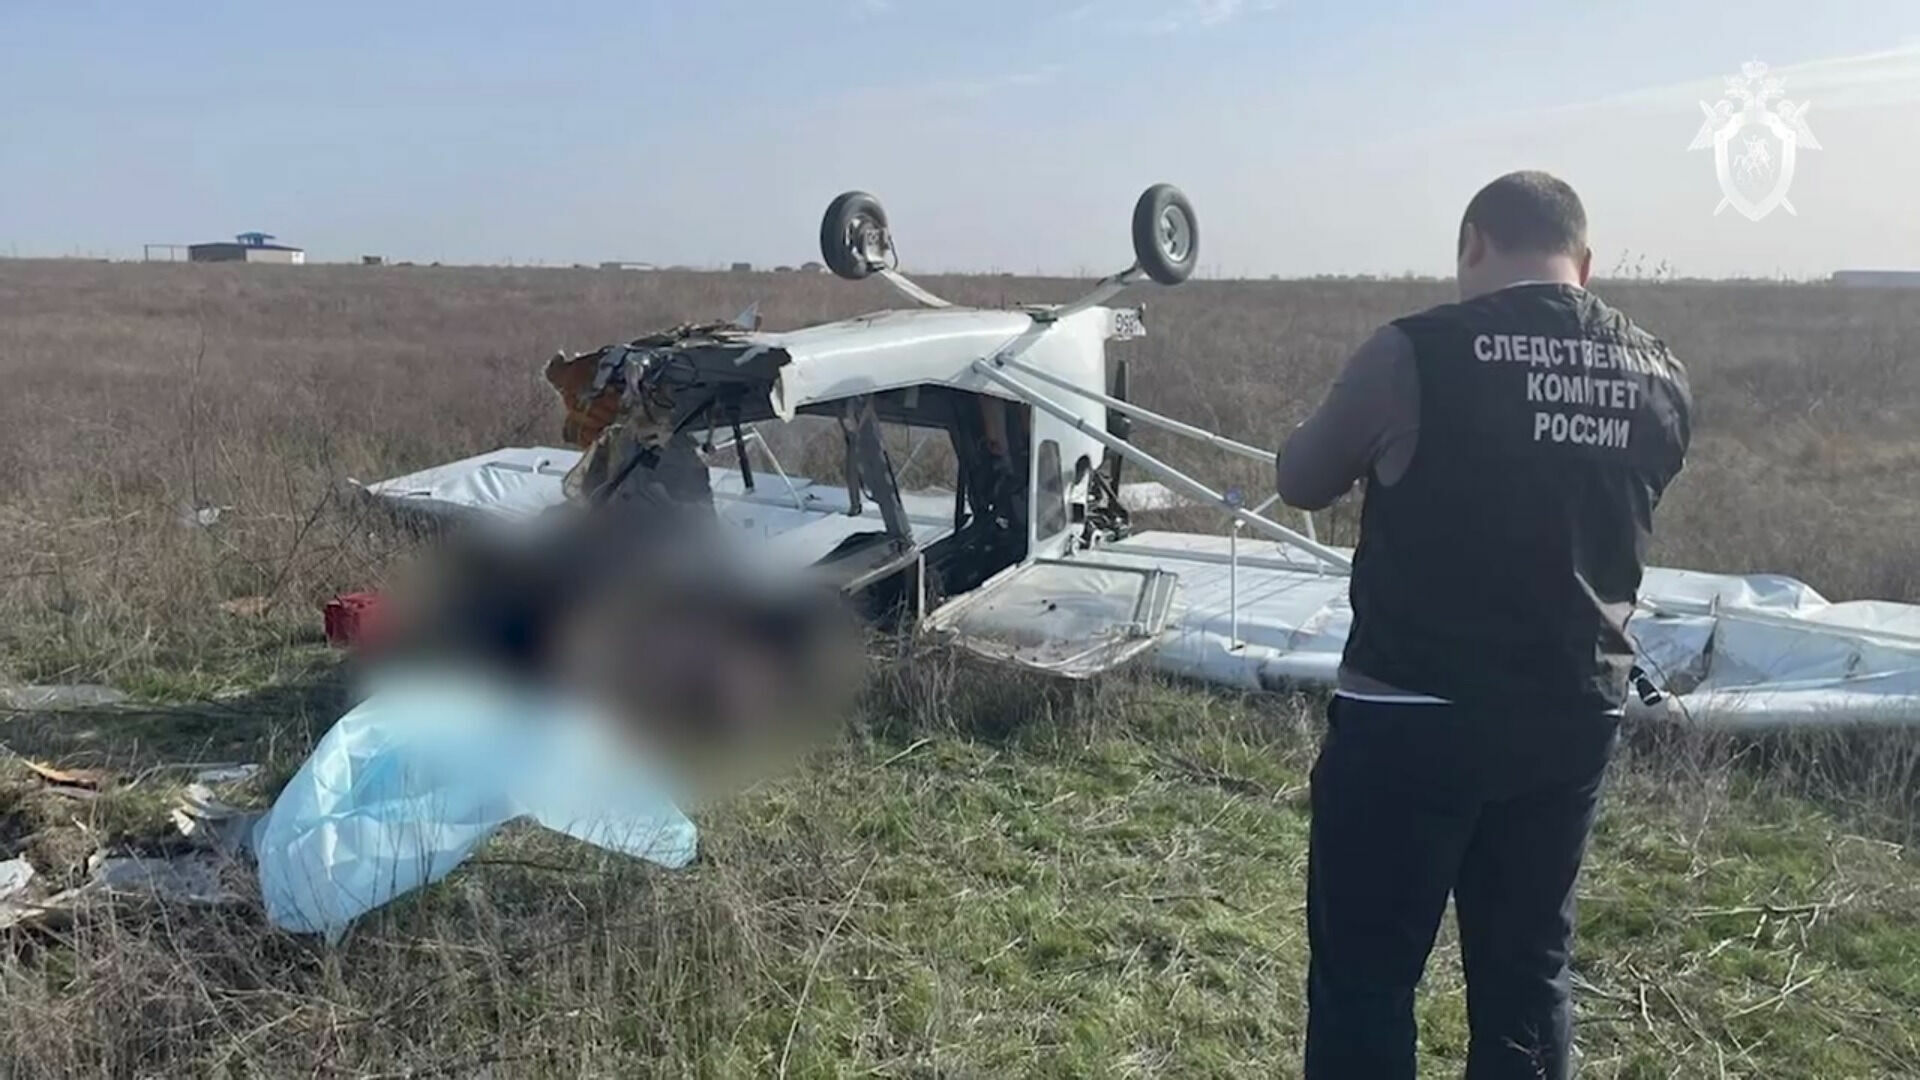 Пилоту разбившегося под Волгоградом самолета не давали разрешения на взлет